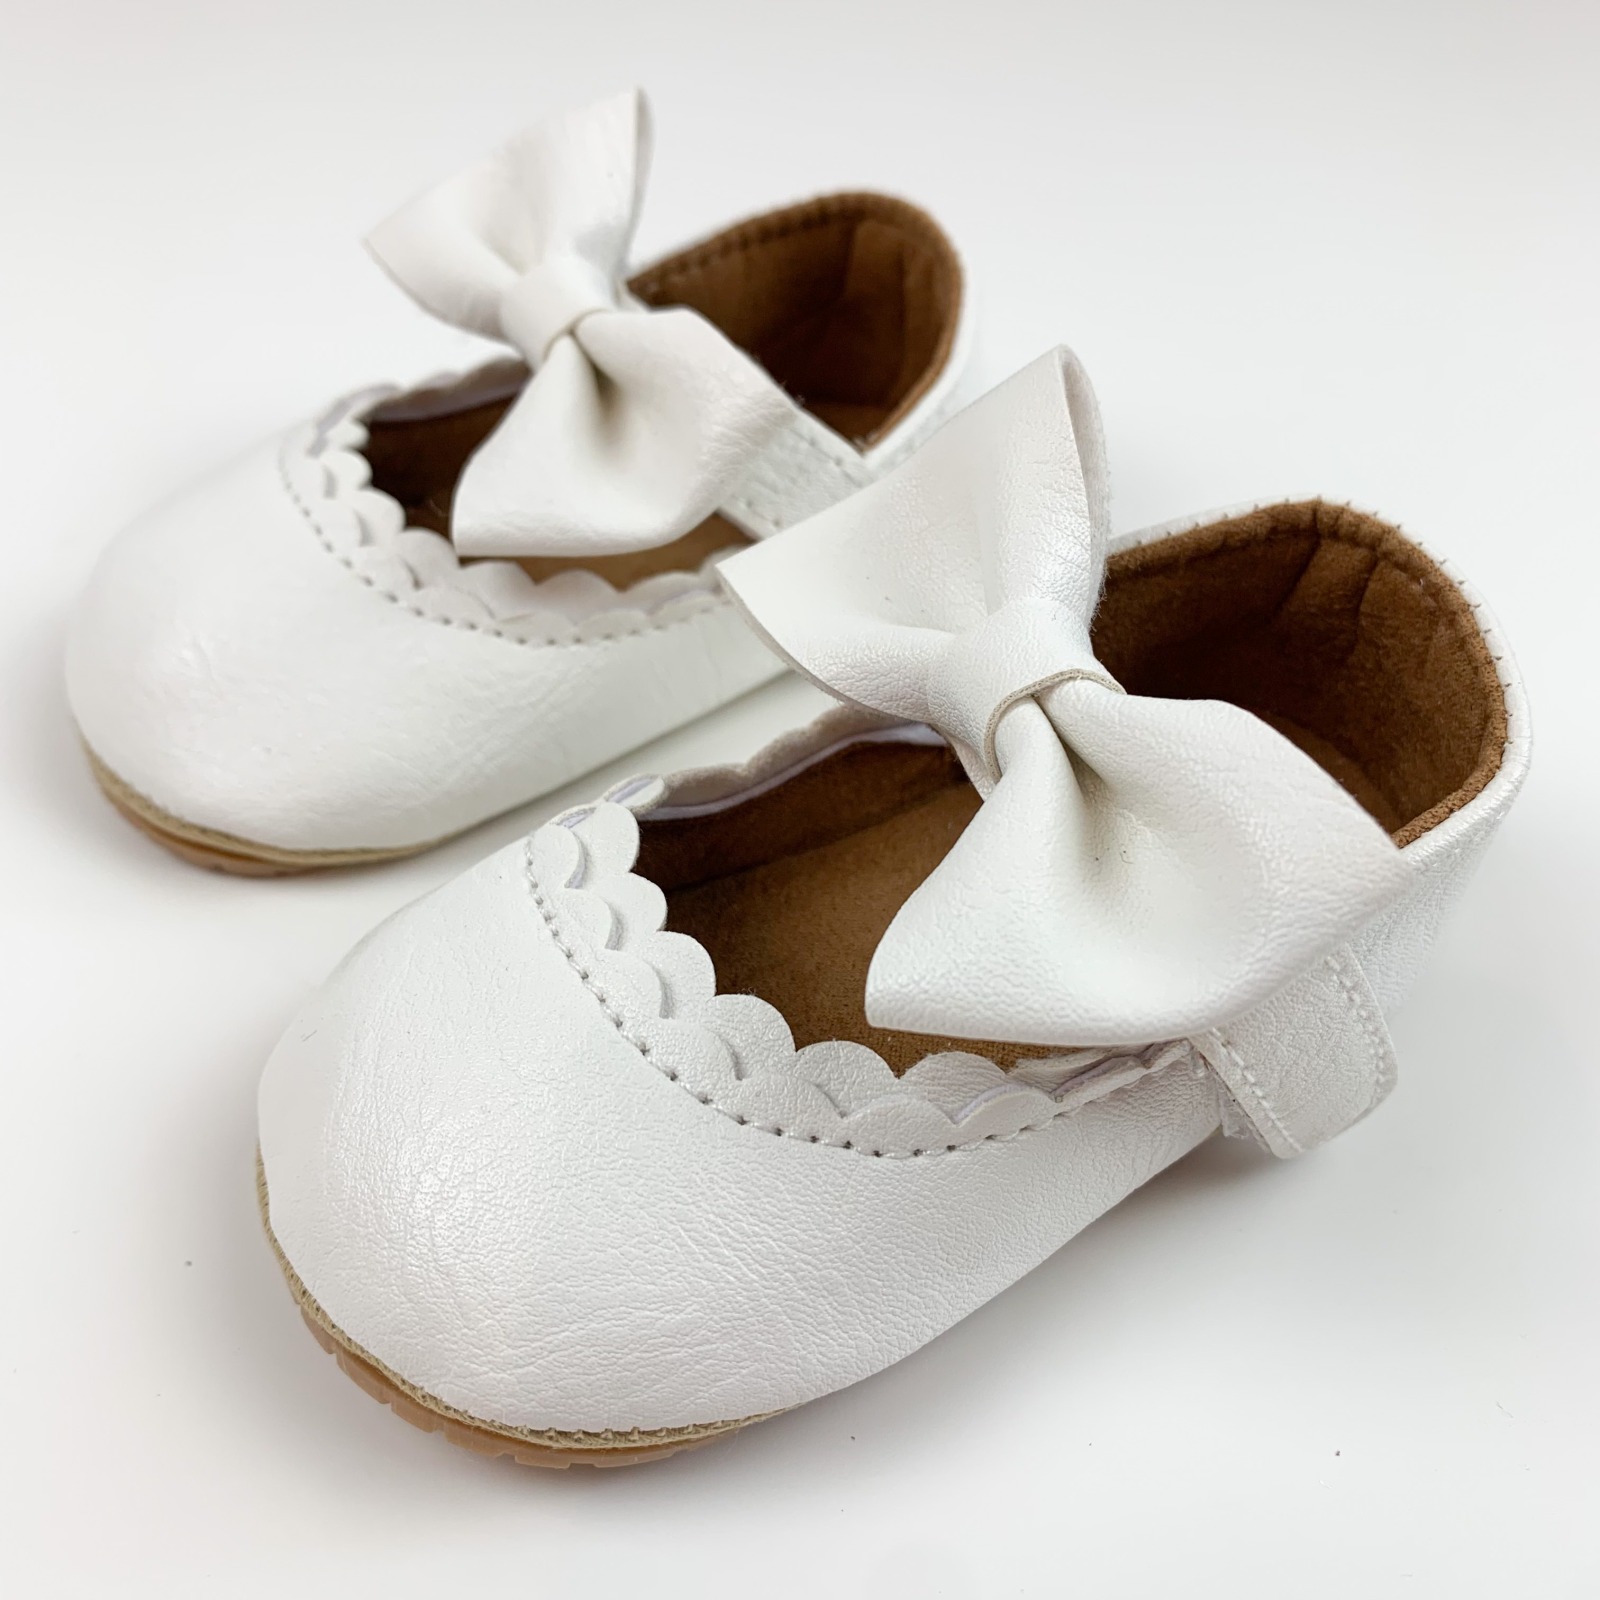 Schuhe - Weiß - 13 bis 18 Monate 13 cm